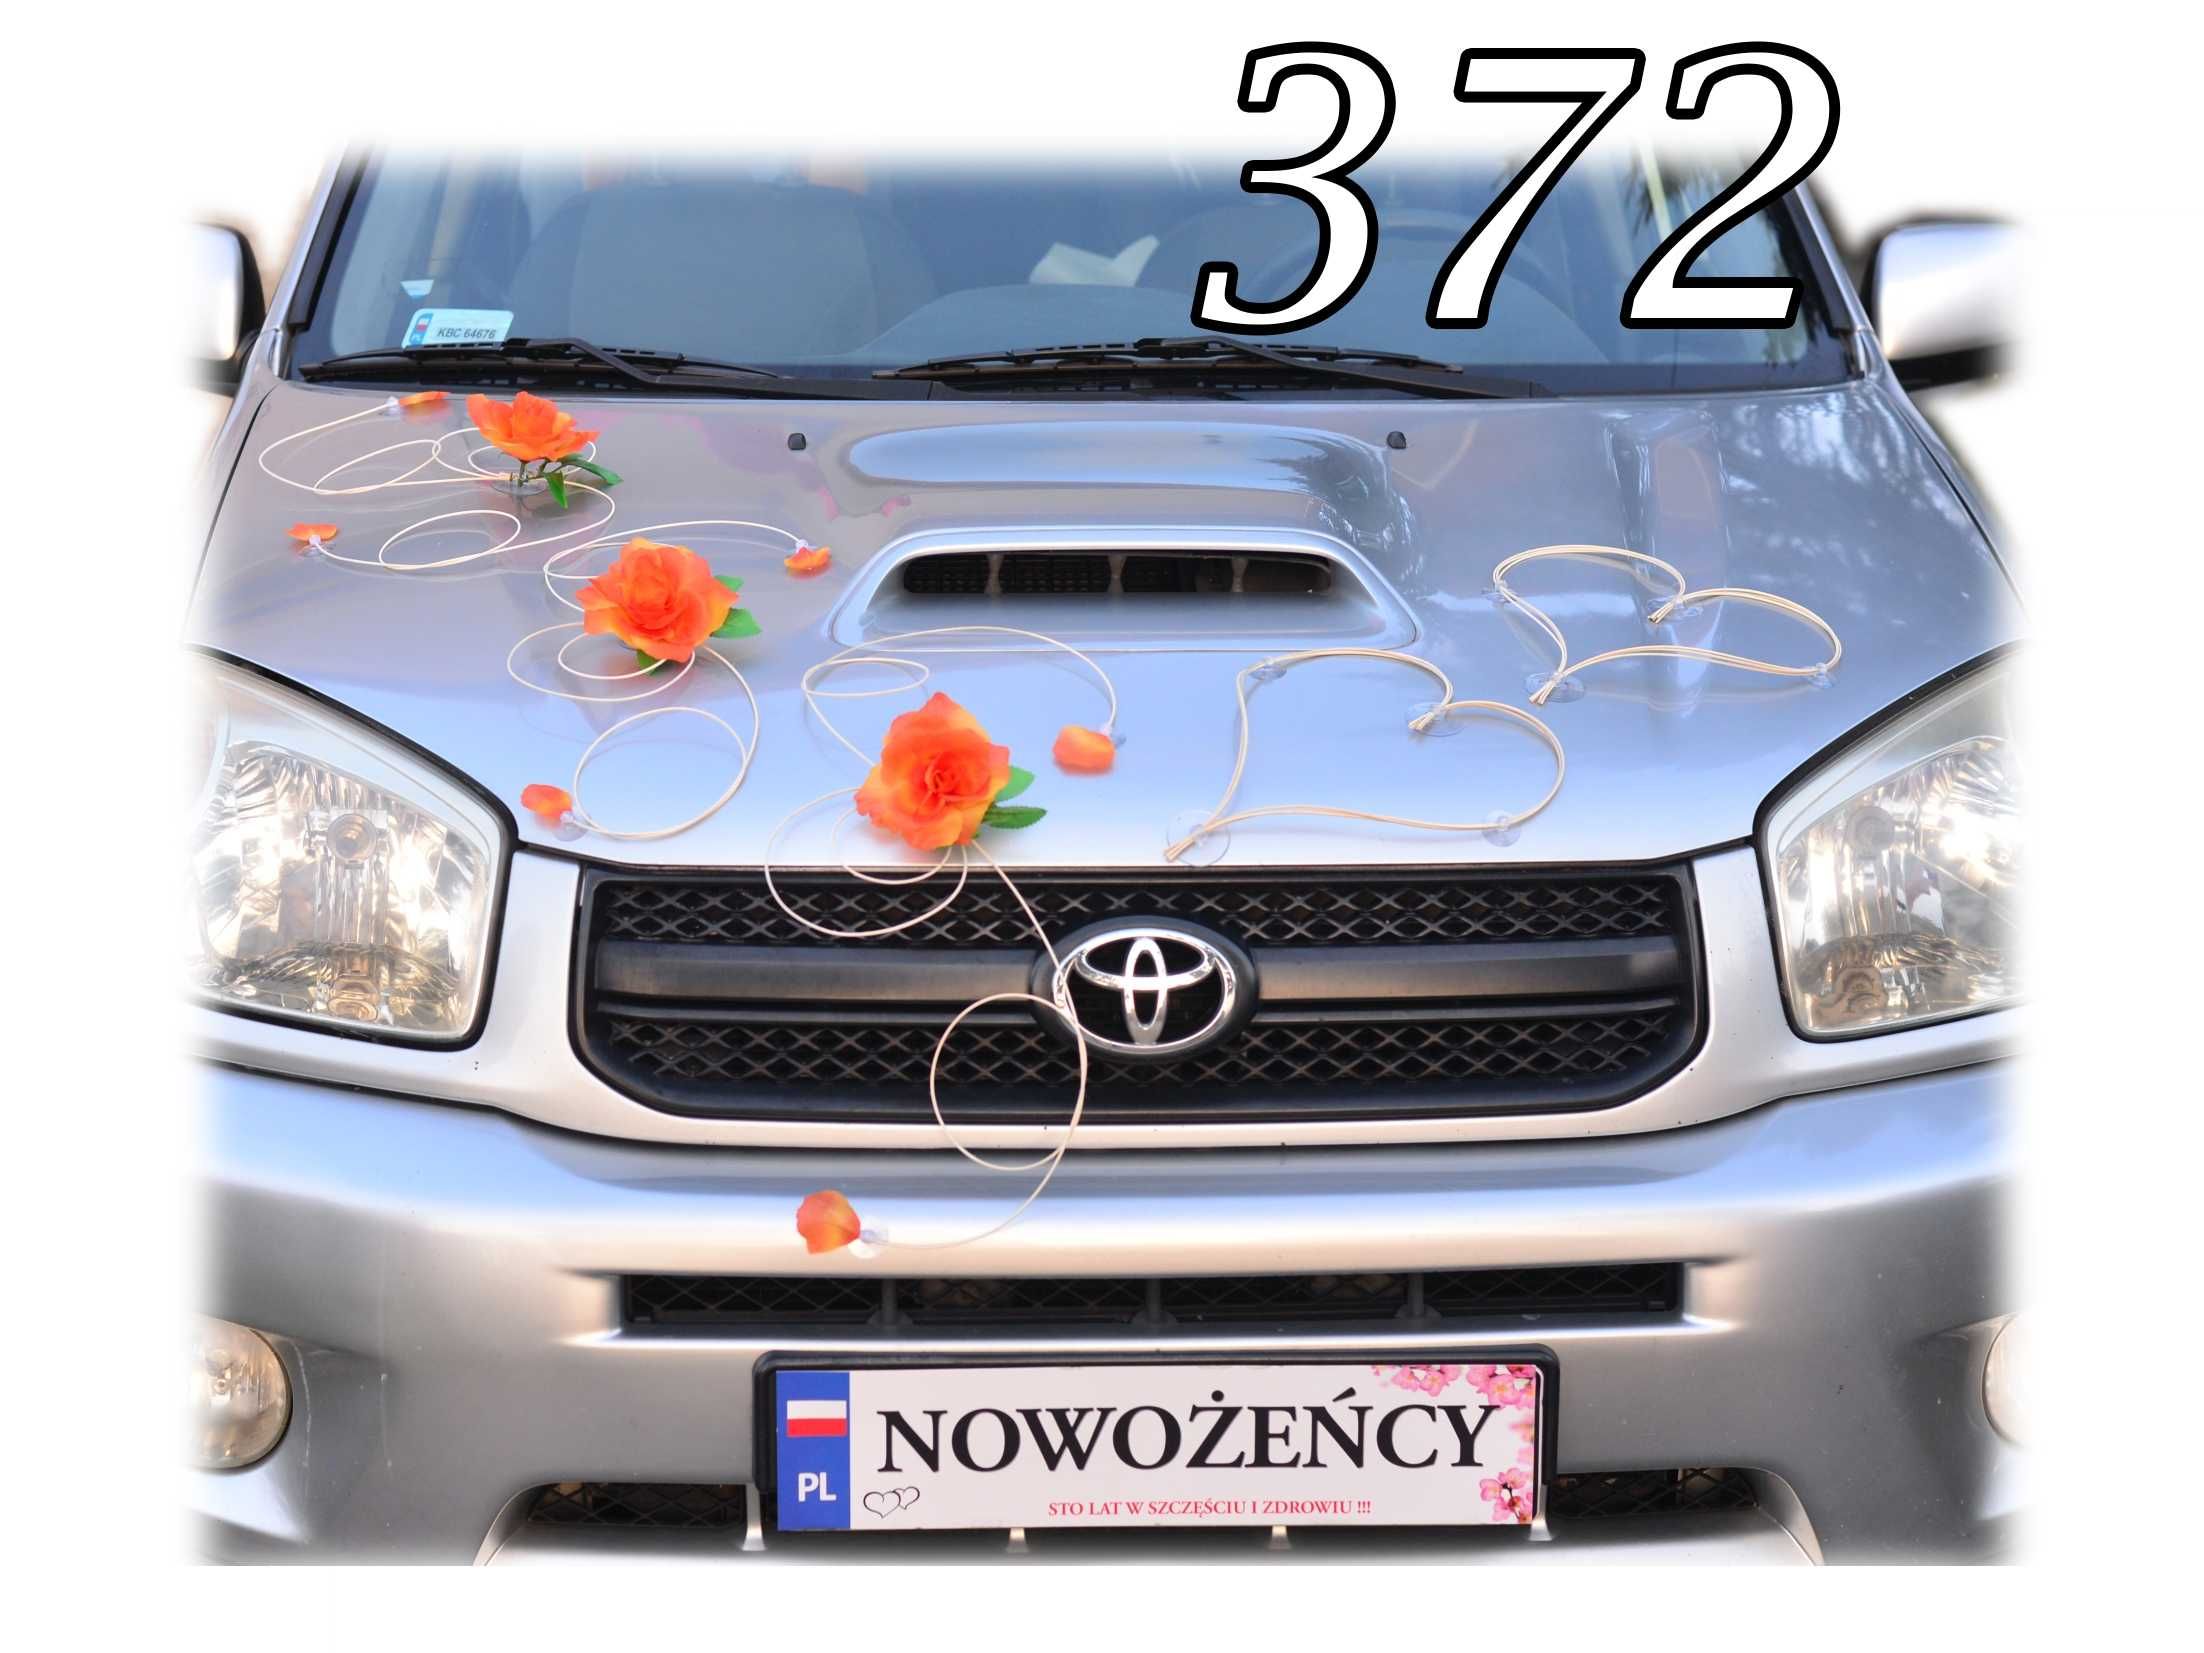 Piękna HERBACIANA dekoracja ozdoba na auto samochód ślubny Nr 372